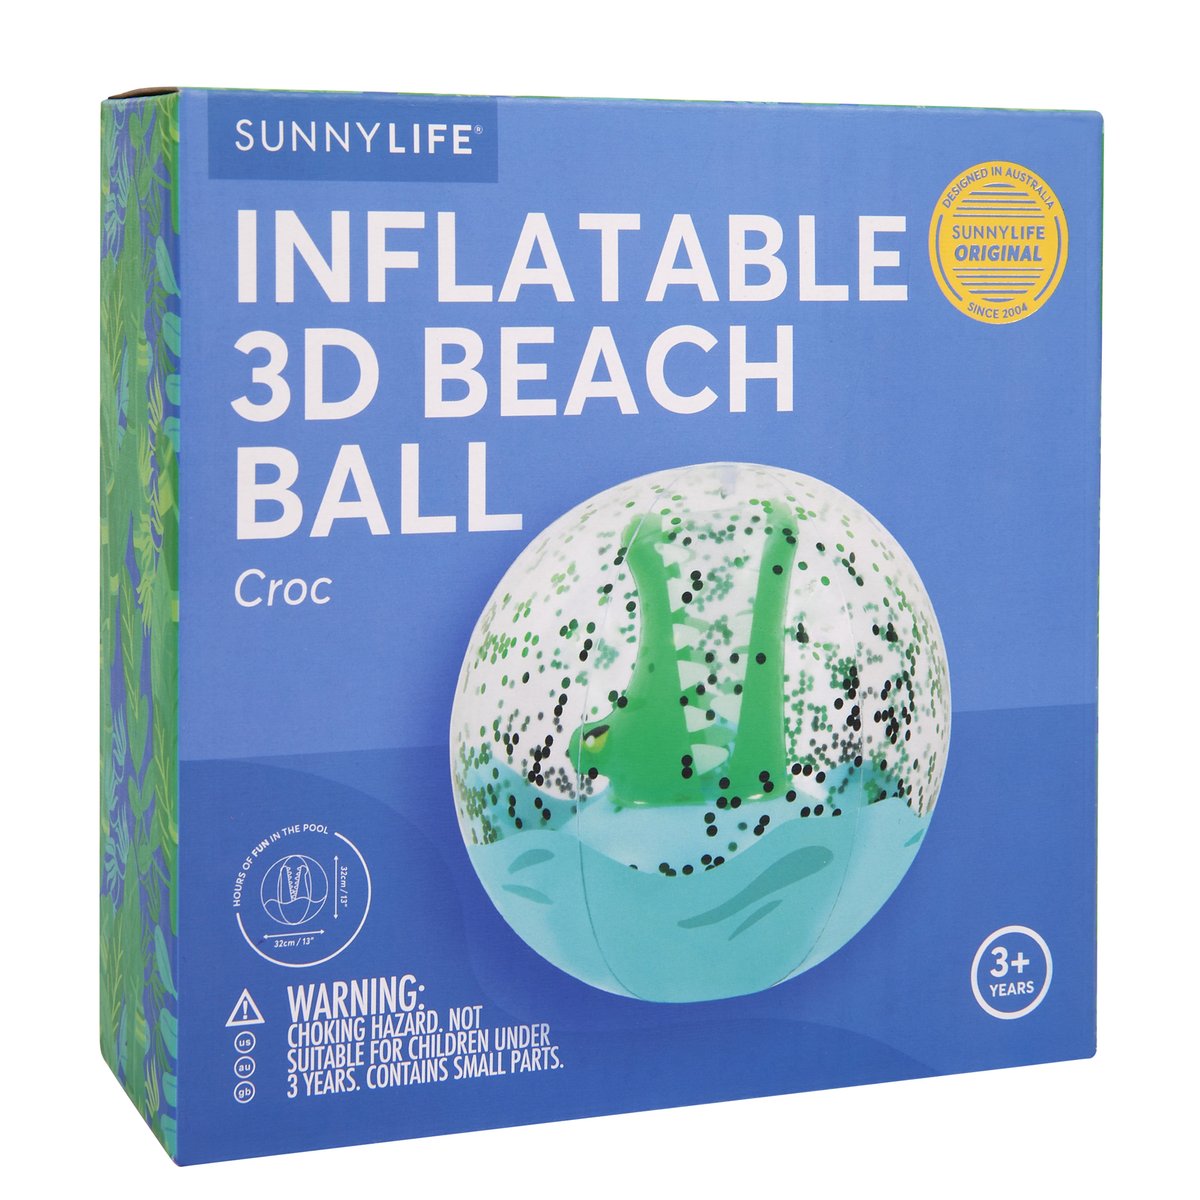 3D Inflatable Beach Ball - Crocodile